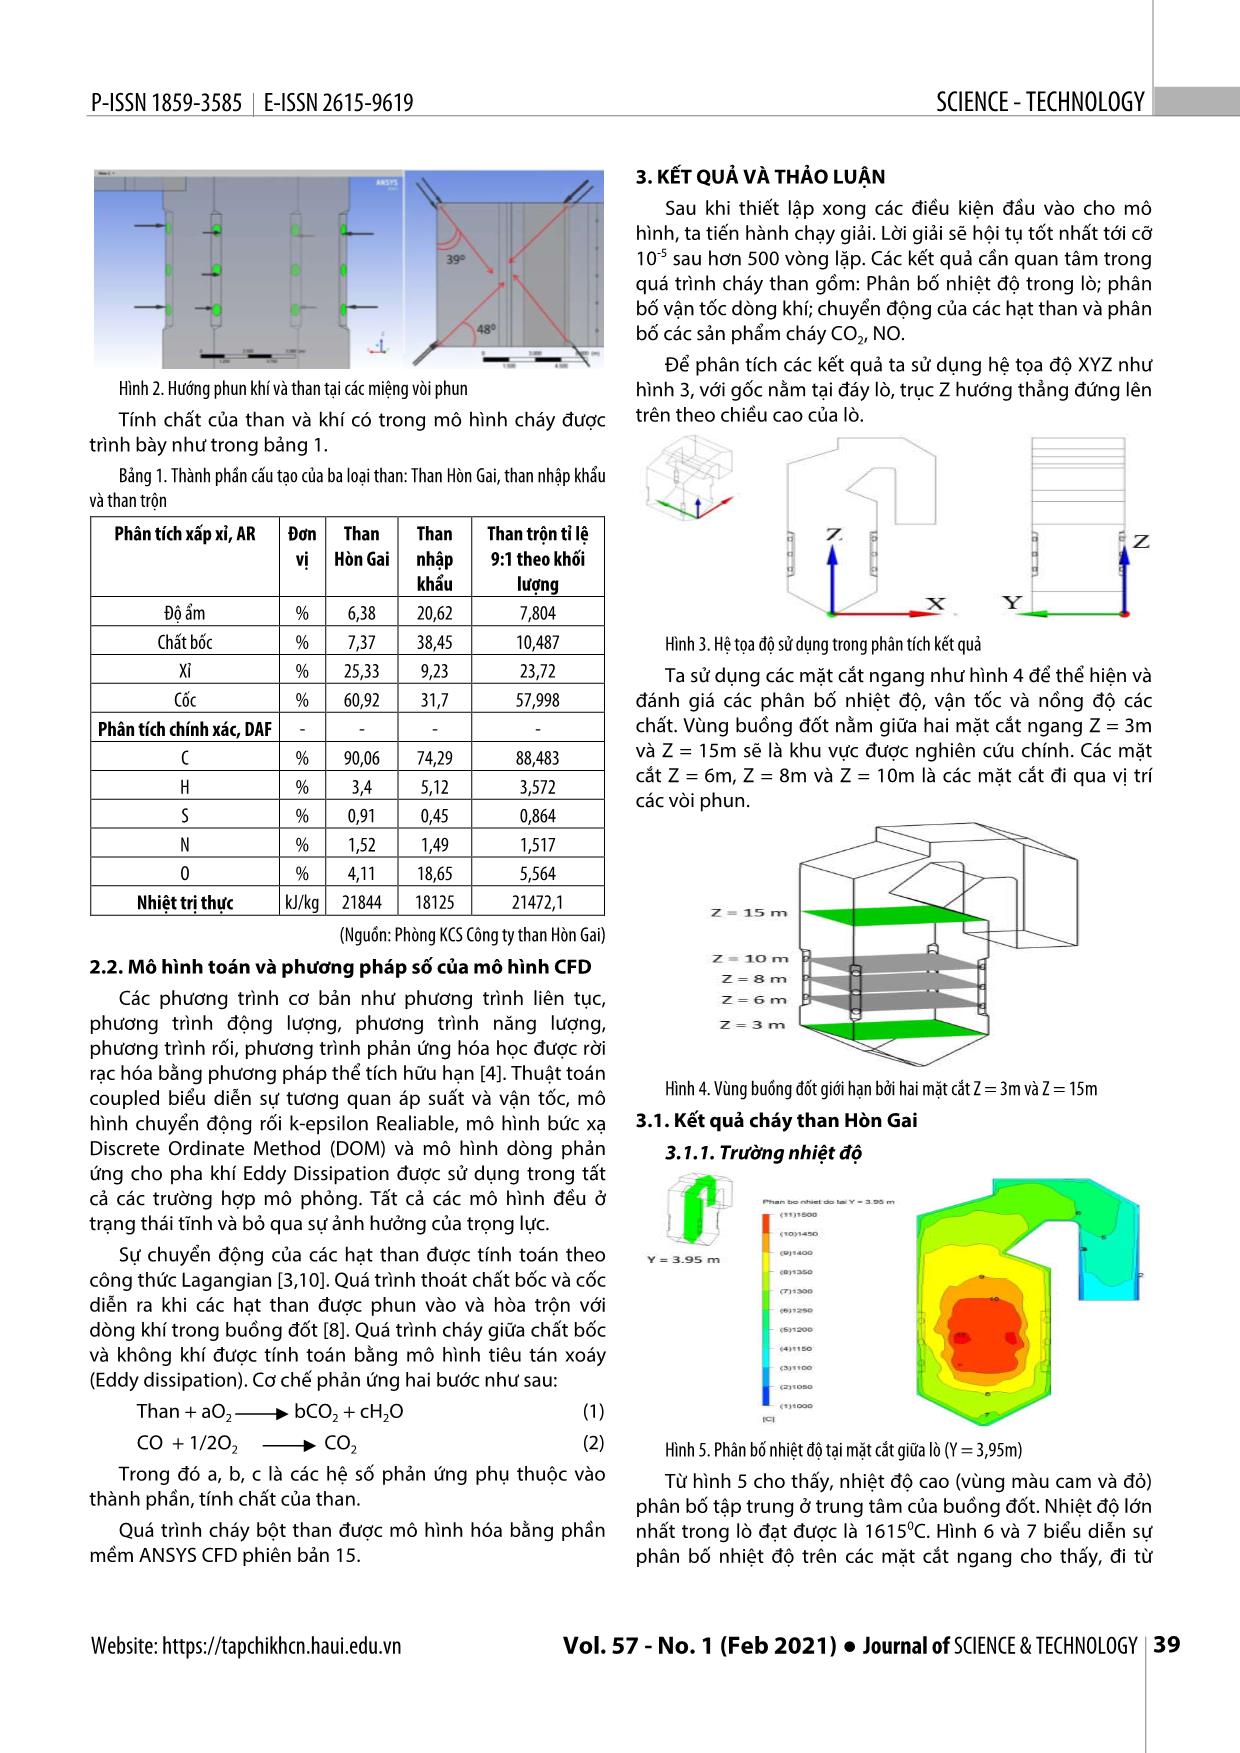 Ứng dụng mô phỏng số nghiên cứu quá trình cháy than trong lò hơi nhà máy nhiệt điện trang 2